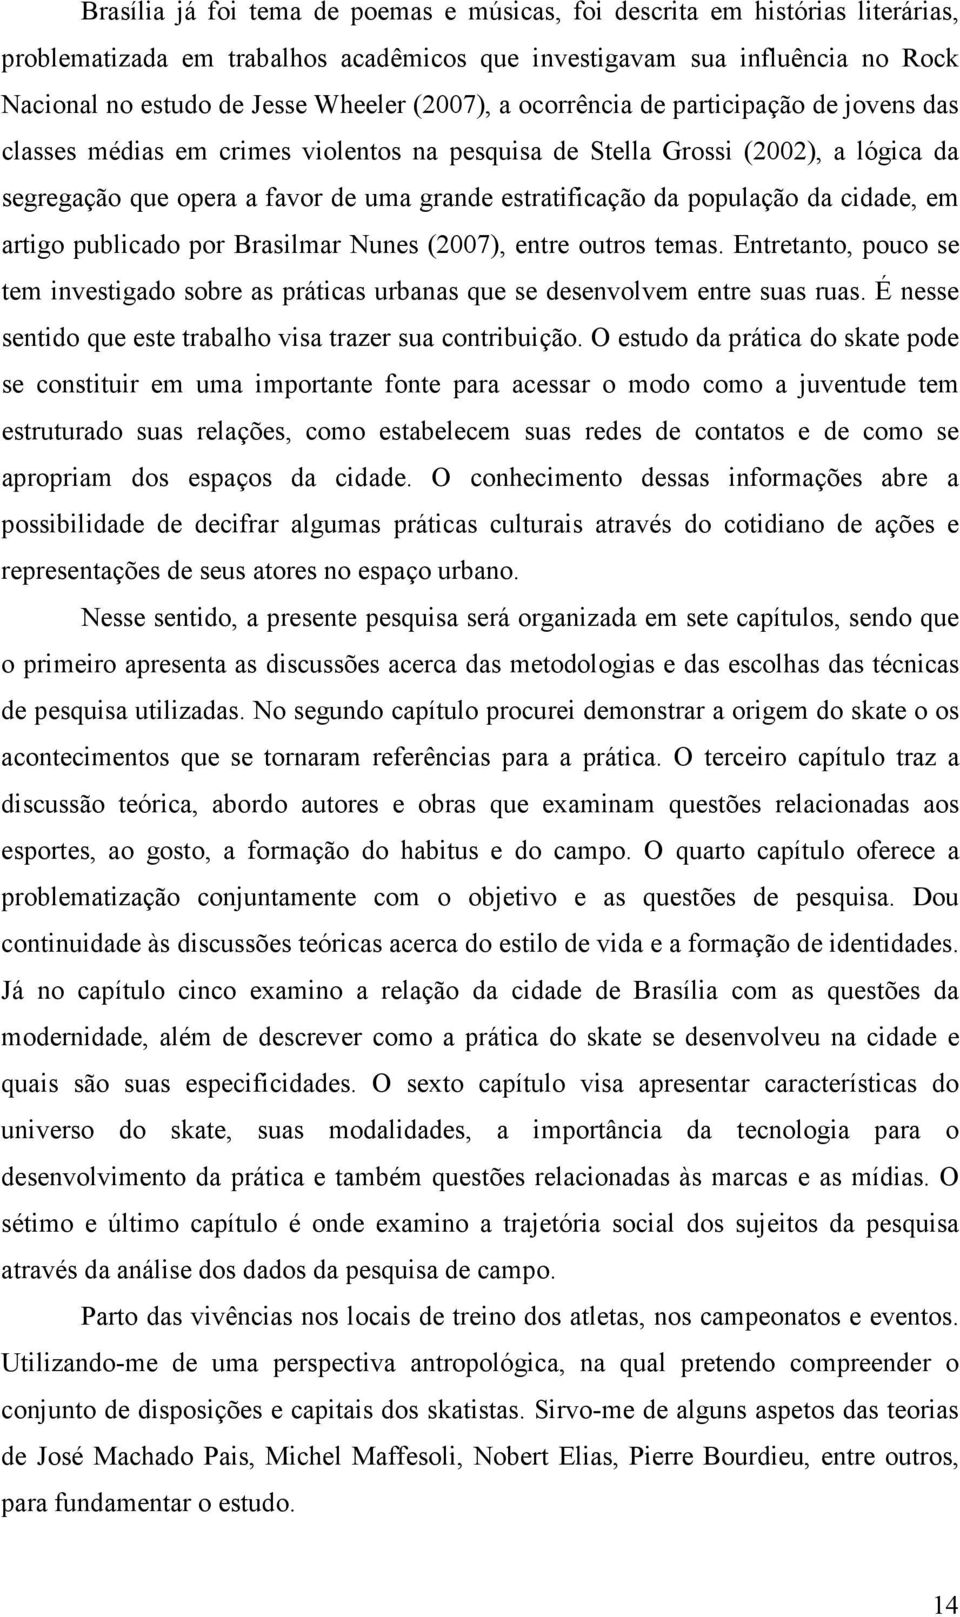 população da cidade, em artigo publicado por Brasilmar Nunes (2007), entre outros temas. Entretanto, pouco se tem investigado sobre as práticas urbanas que se desenvolvem entre suas ruas.